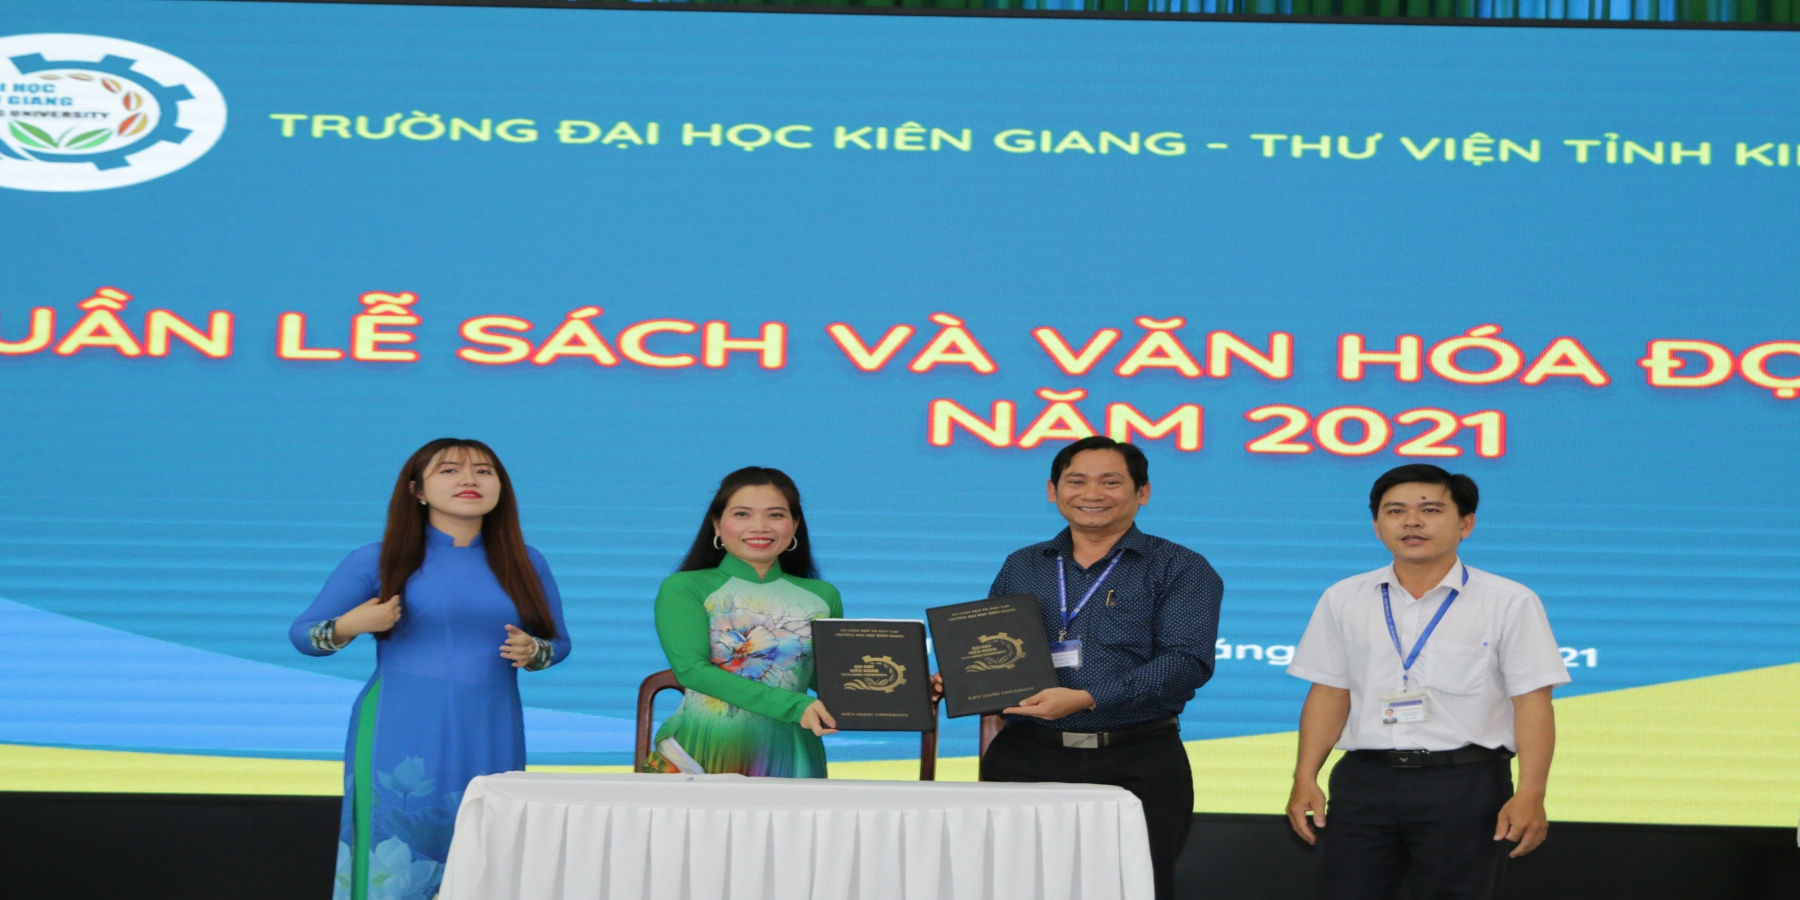 Hợp tác, chia sẻ nguồn sách và học liệu với Thư viện tỉnh Kiên Giang